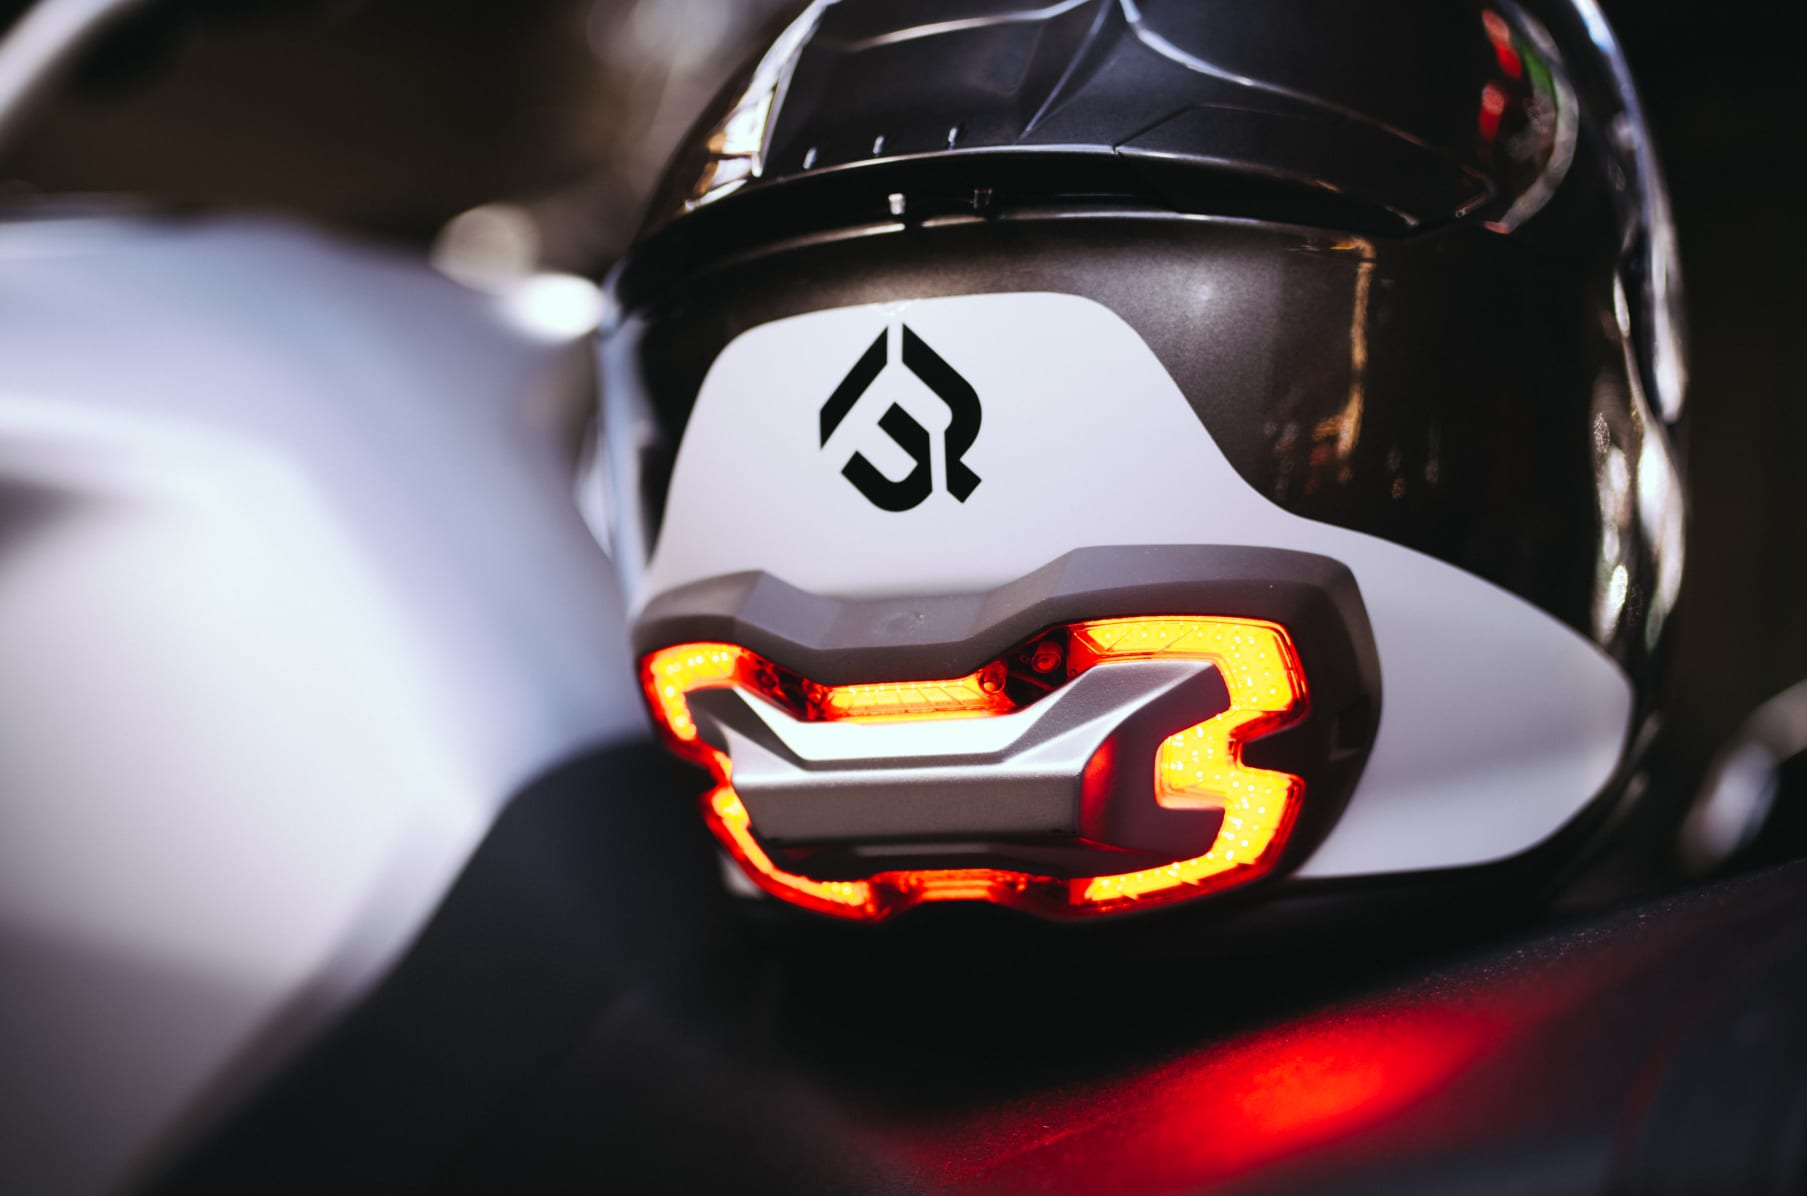 bike helmet with brake light